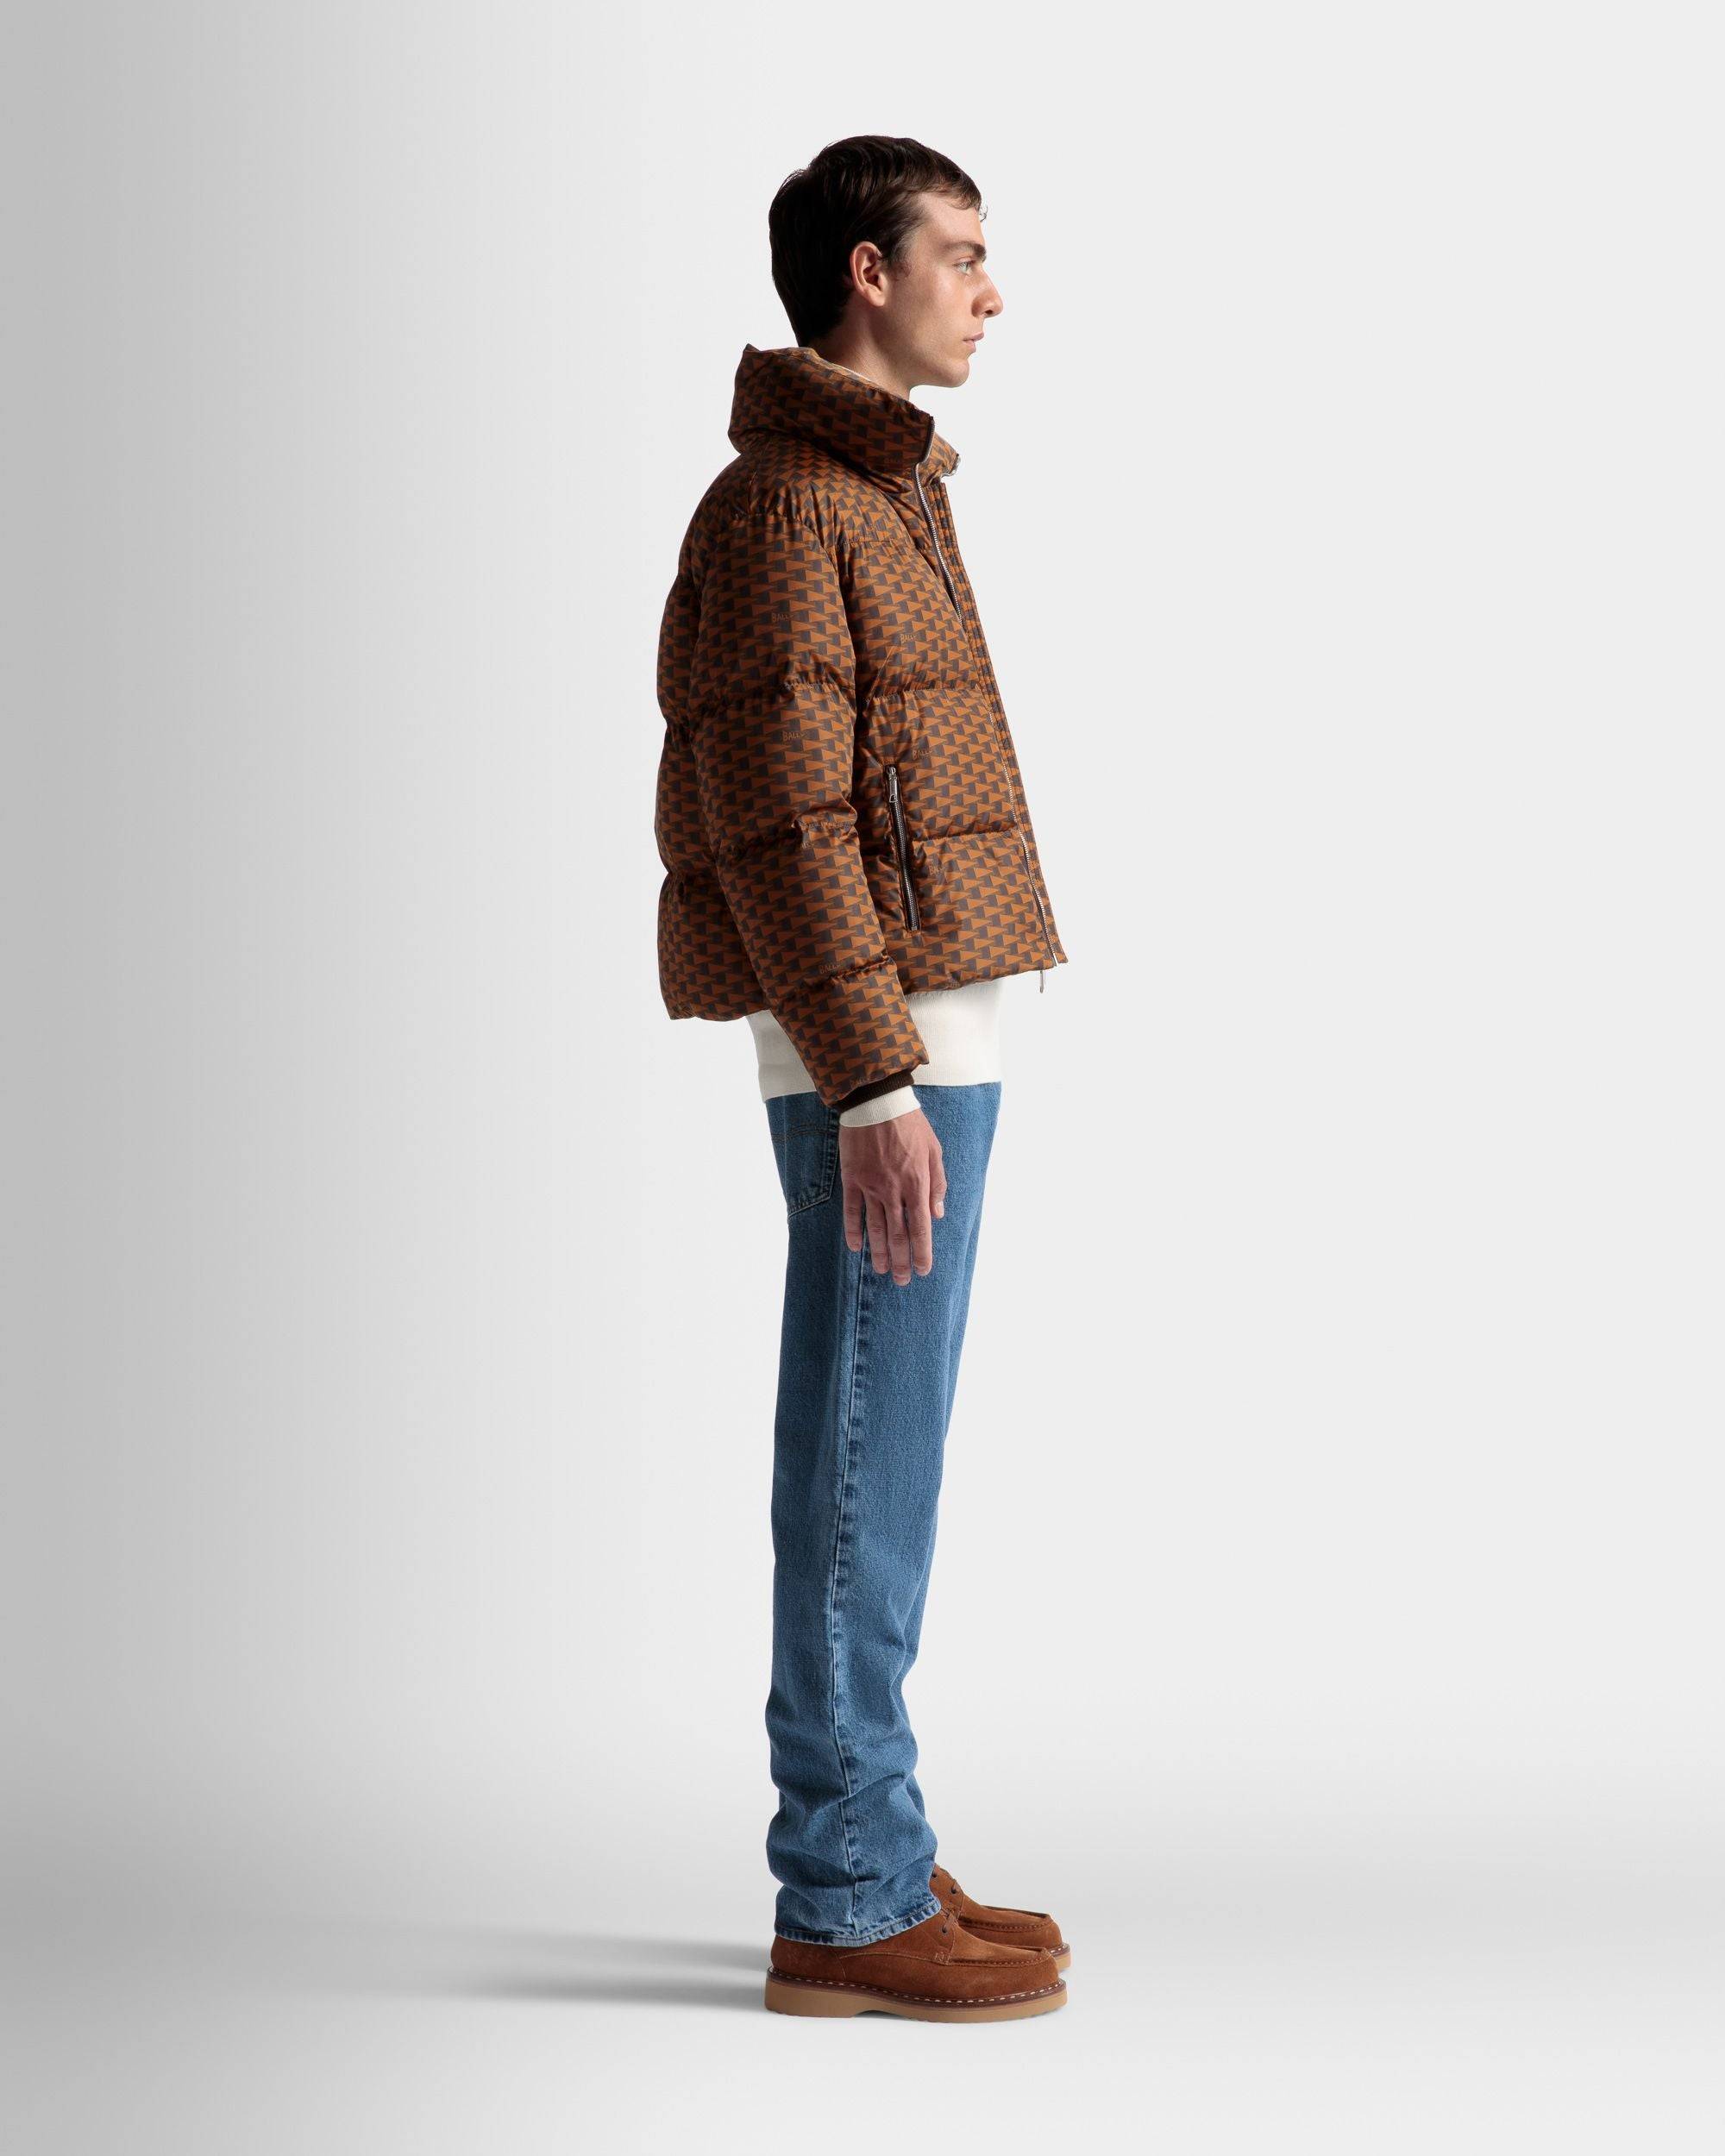 Steppjacke | Jacken und Mäntel für Herren | Nylon in Braun | Bally | Model getragen 3/4 Vorderseite